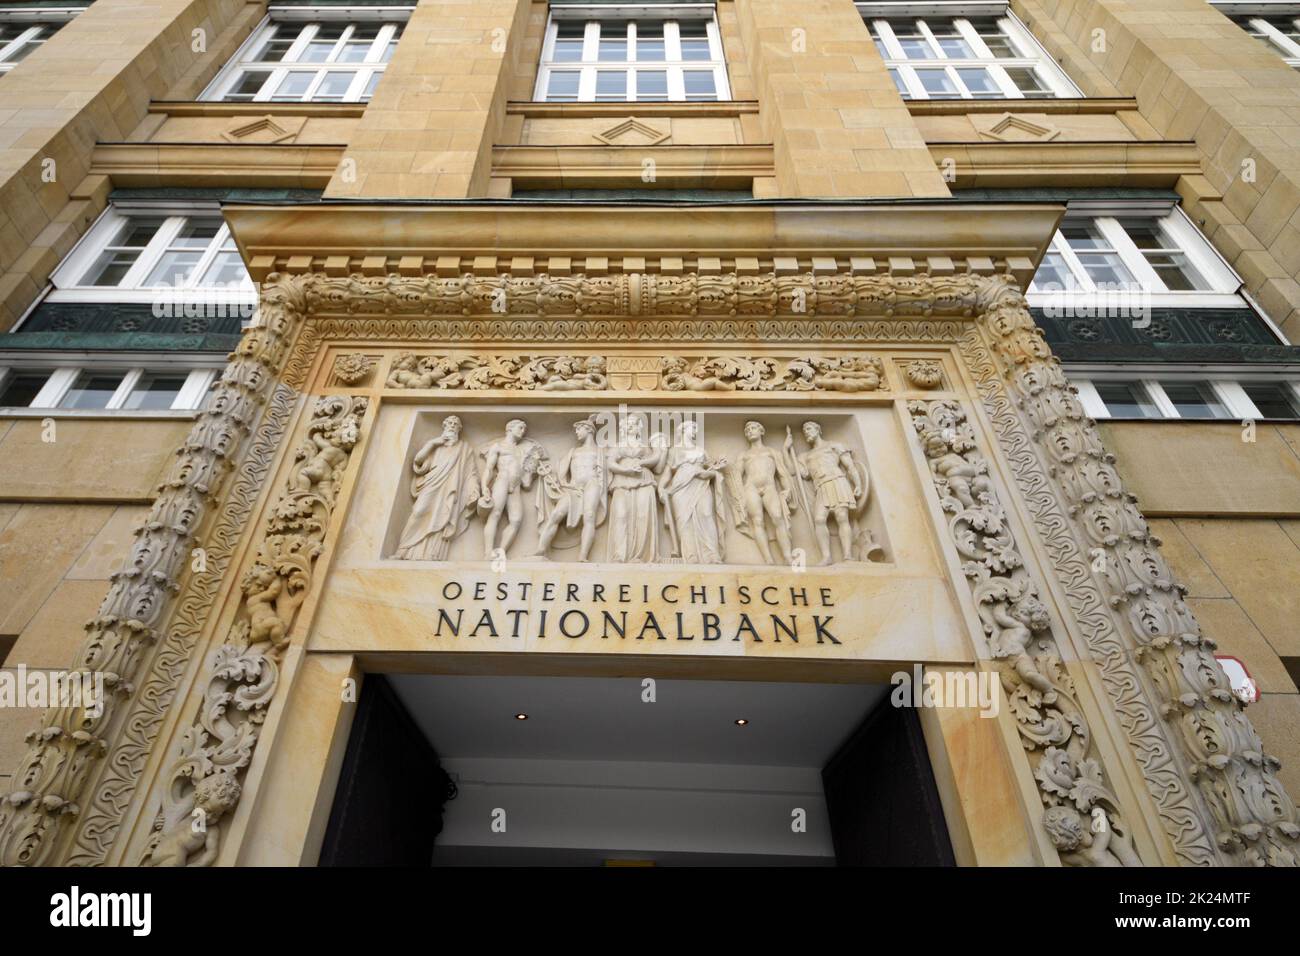 Fassade der Österreichischen Natioanlbank in Wien, Österreich, Europa - Facade of the Austrian National Bank in Vienna, Austria, Europe Stock Photo